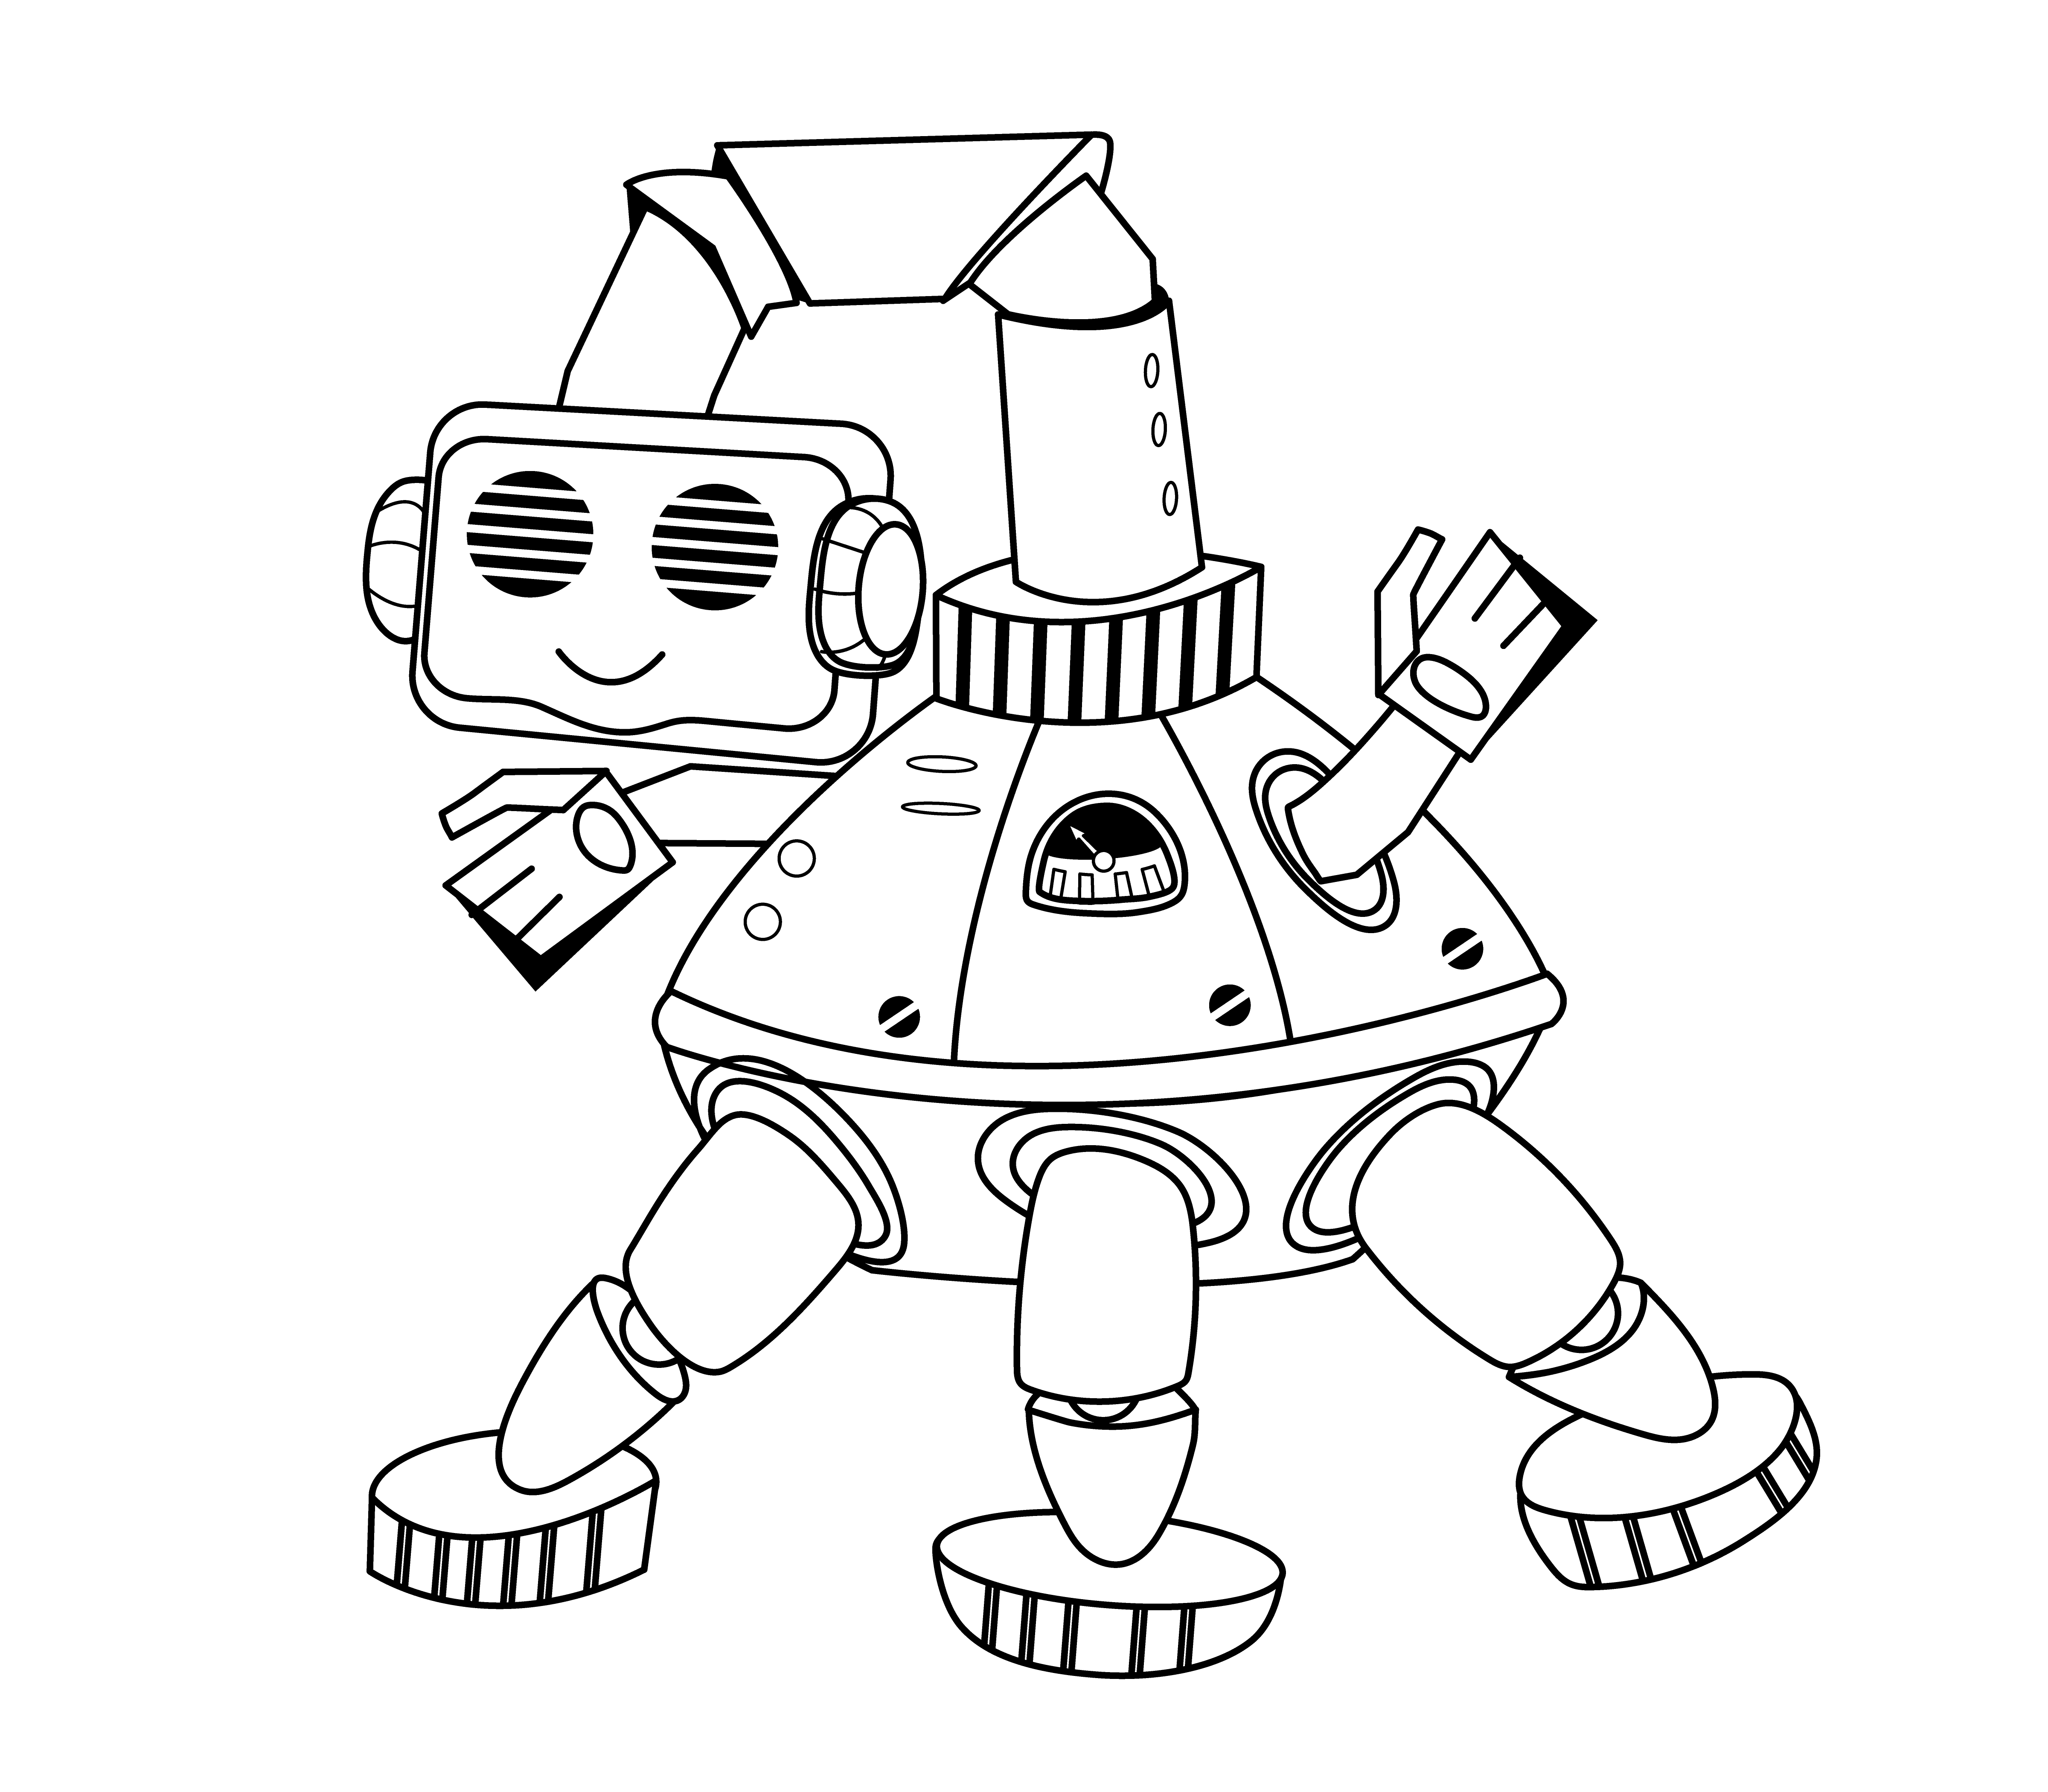 Раскраска милый робот мультипликатор формата А4 в высоком качестве